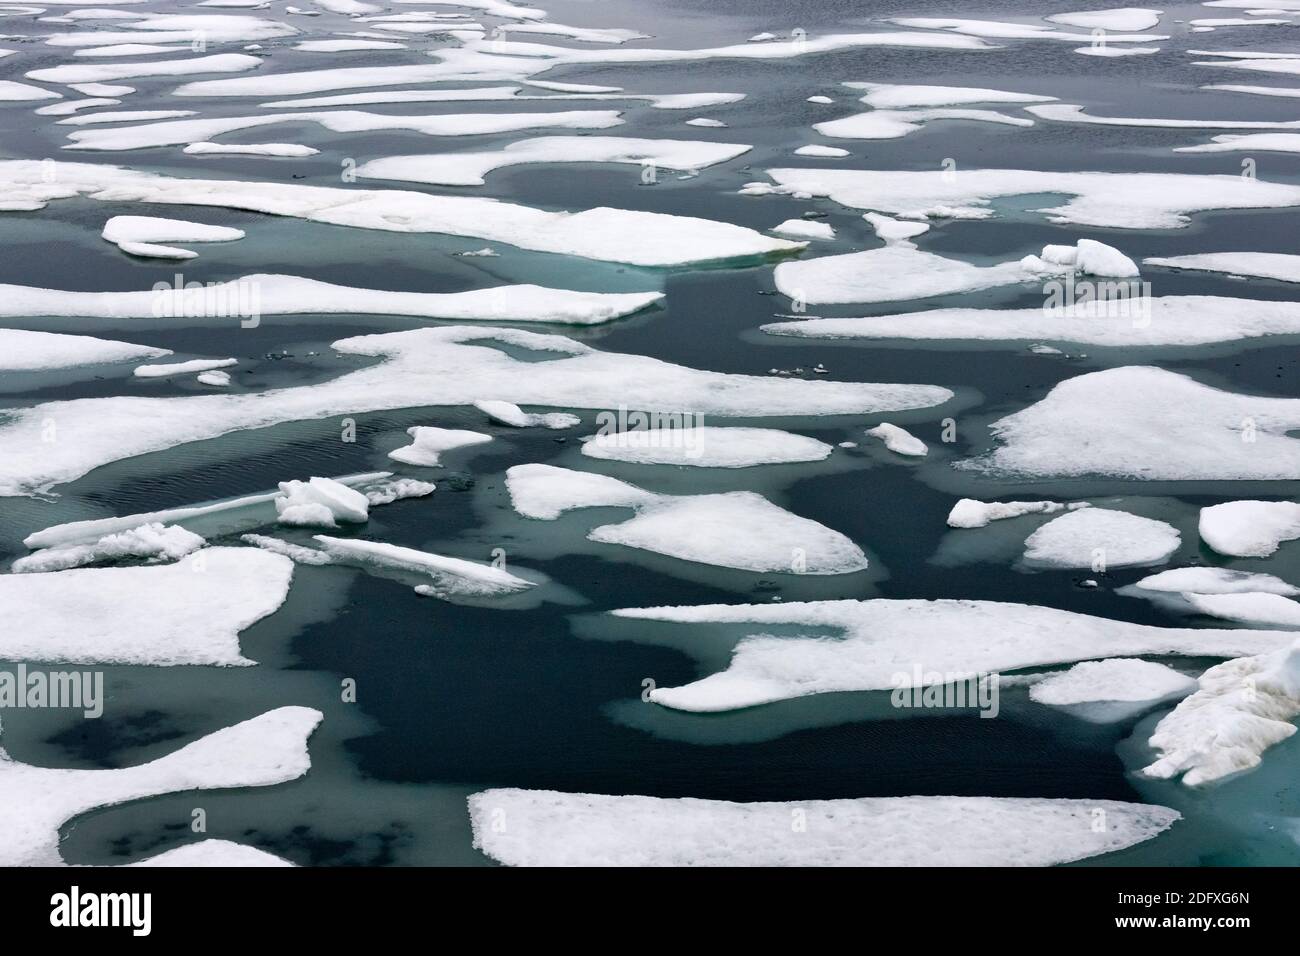 La glace flottante dans la mer de Chukchi, Extrême-Orient russe Banque D'Images